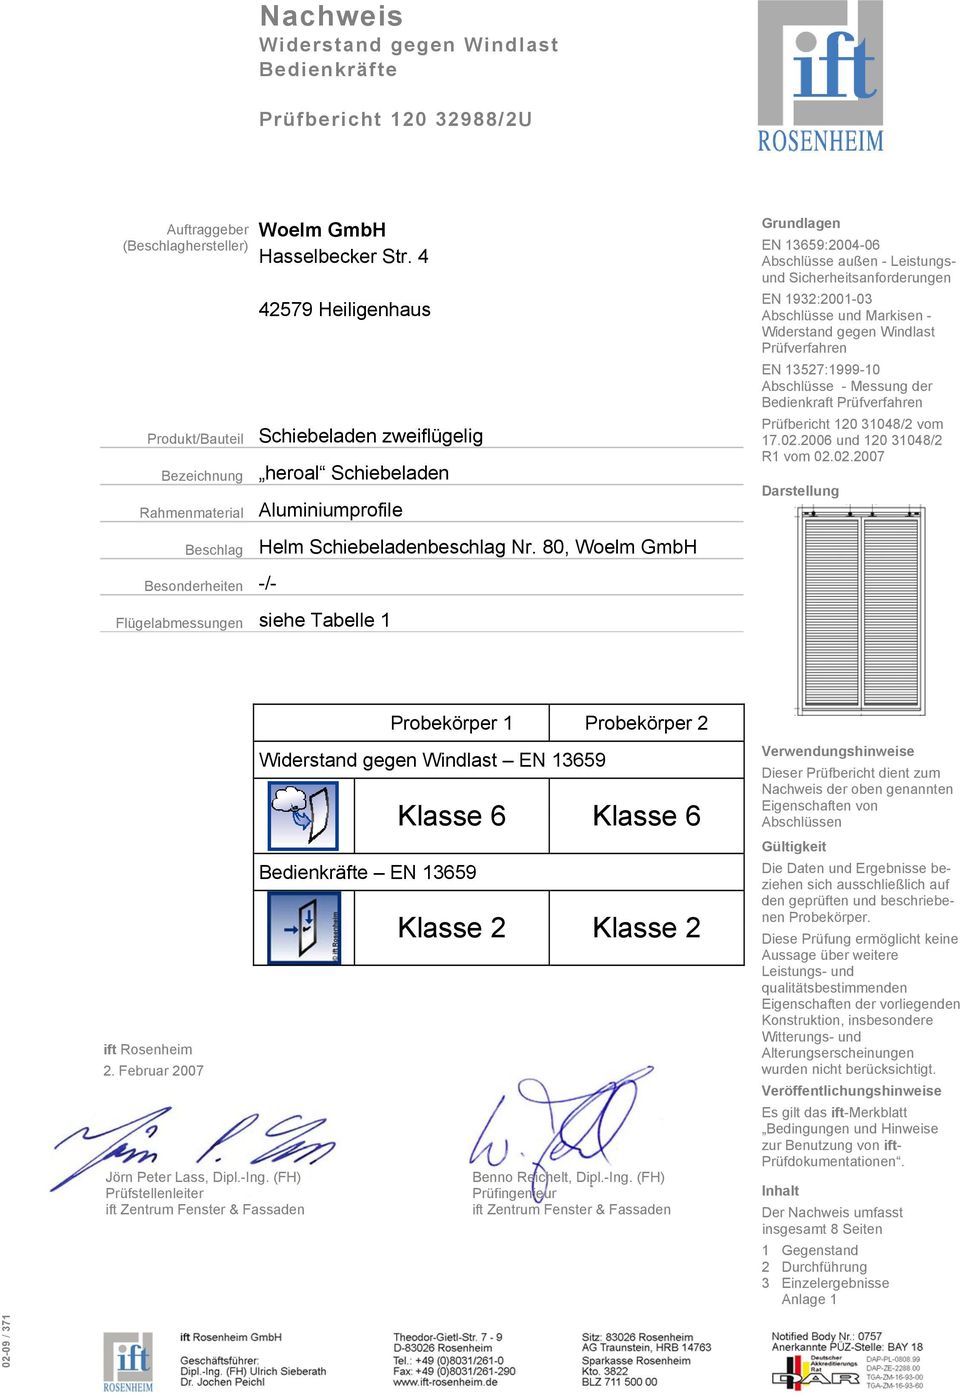 Markisen - Widerstand gegen Windlast Prüfverfahren EN 13527:1999-10 Abschlüsse - Messung der Bedienkraft Prüfverfahren Prüfbericht 120 31048/2 vom 17.02.